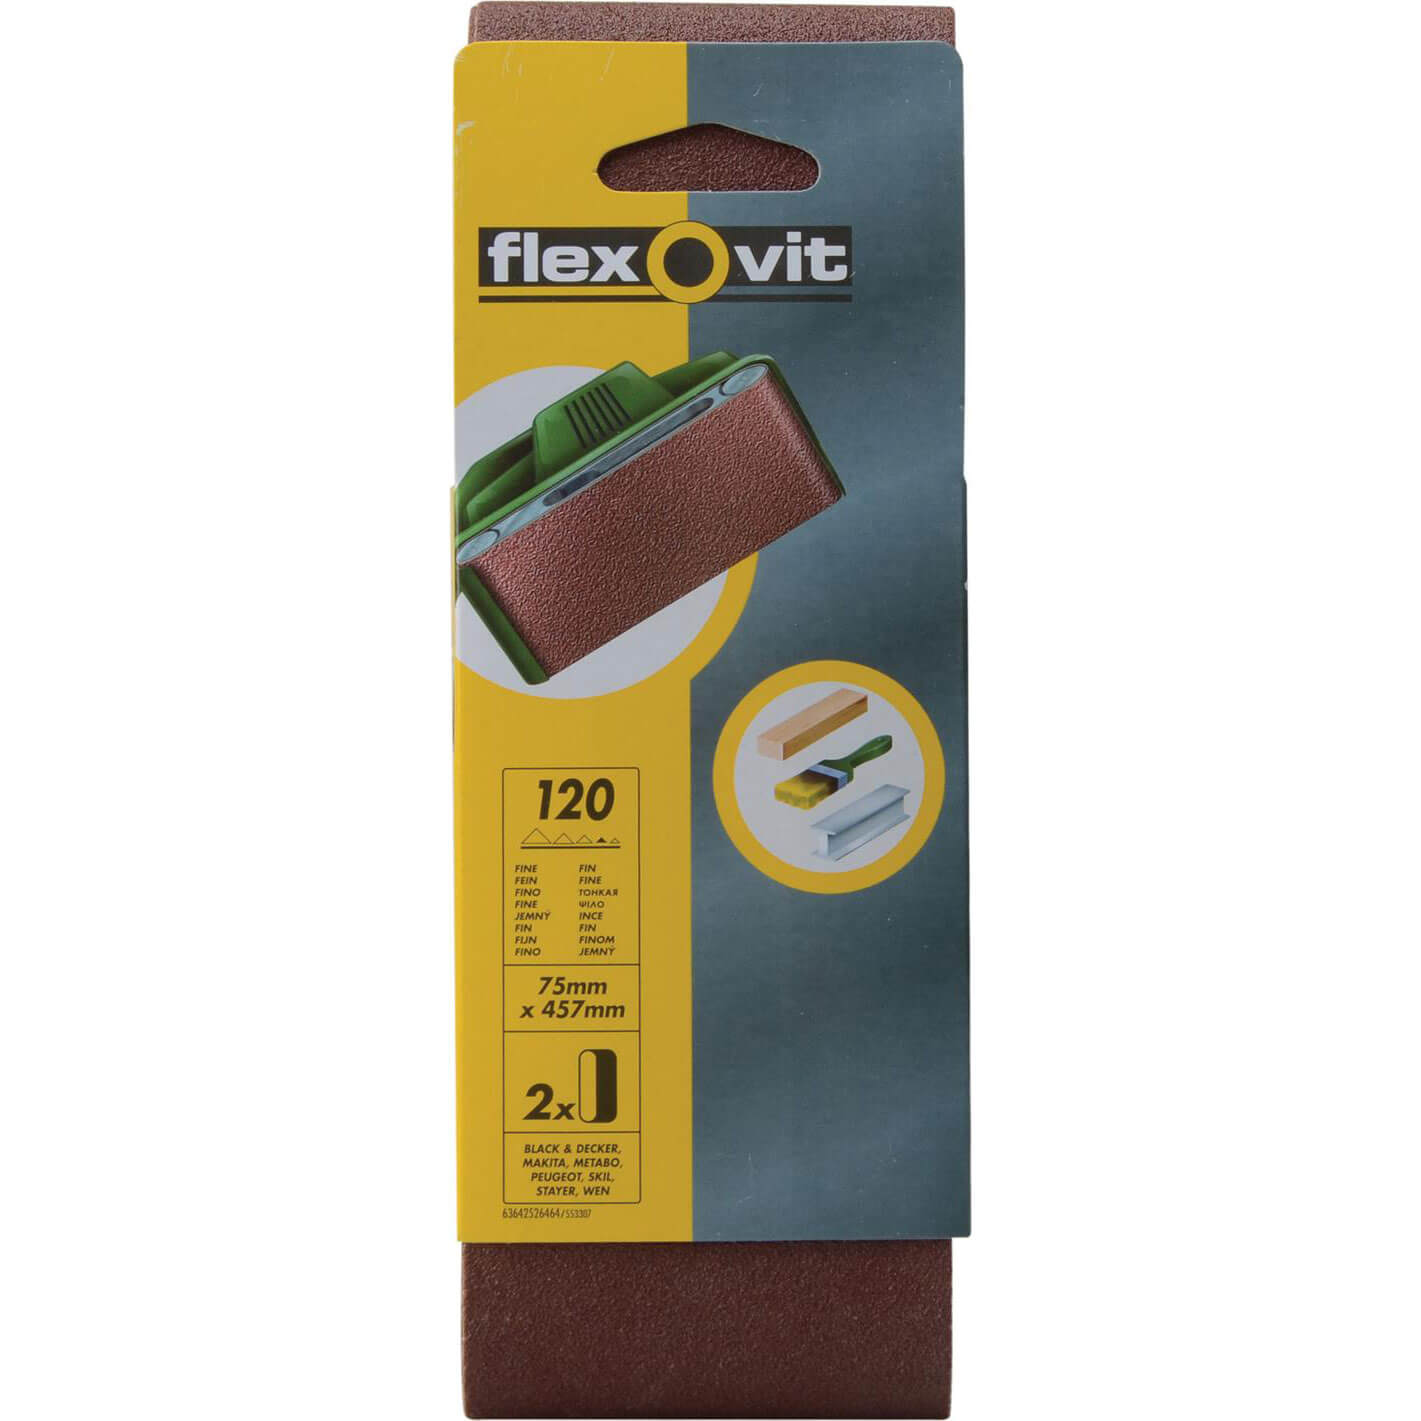 Image of Flexovit Sanding Belts 75 x 457mm 120g Pack of 2